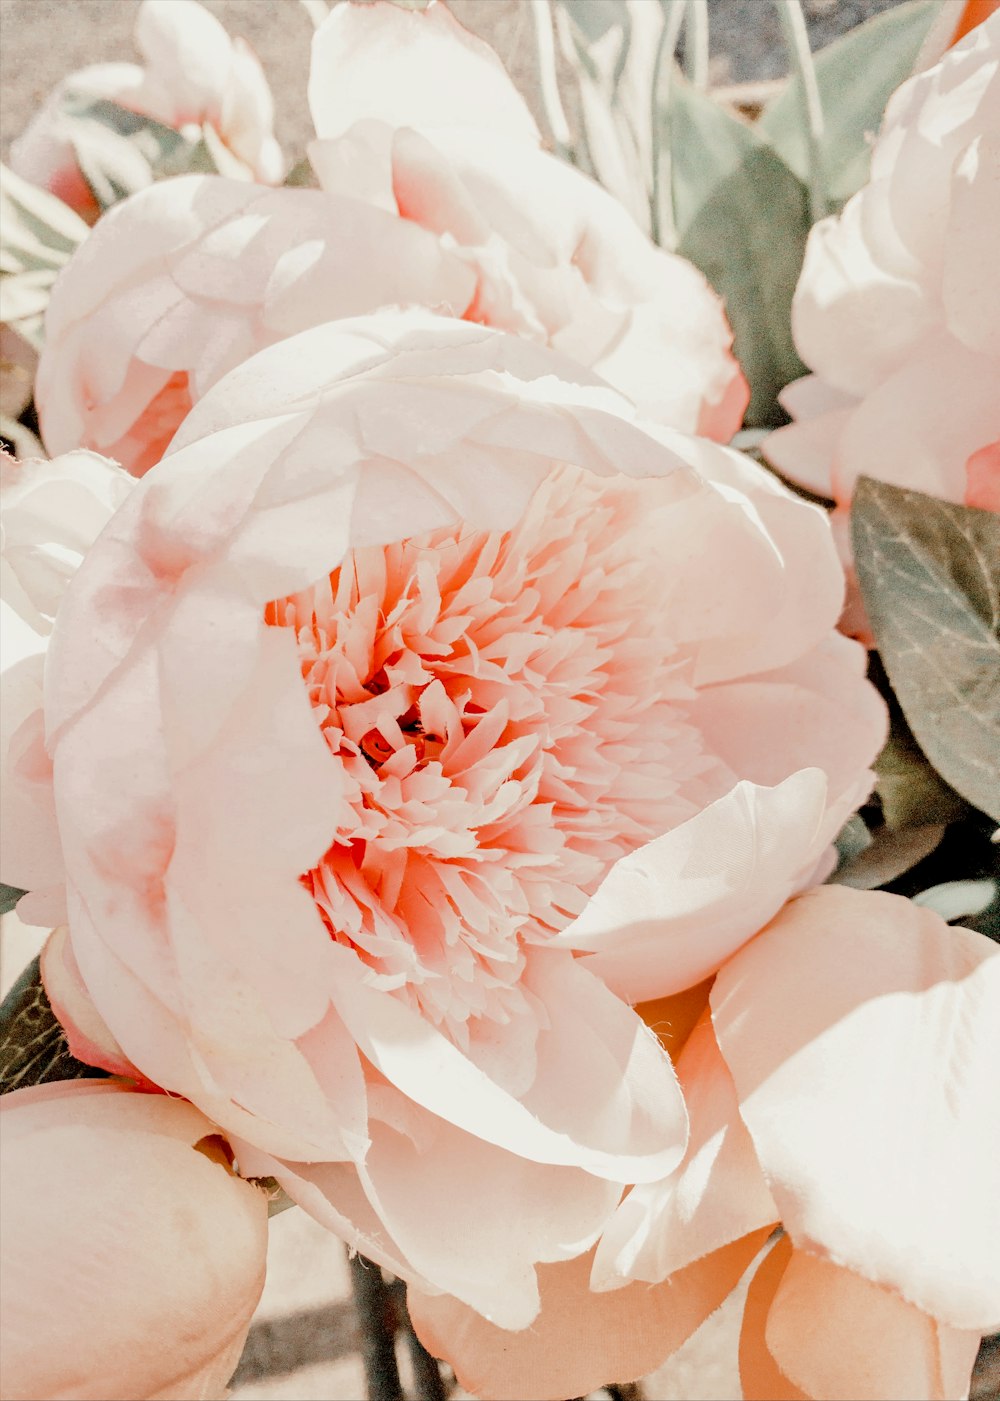 Rosa und weiße Blume in Nahaufnahmen